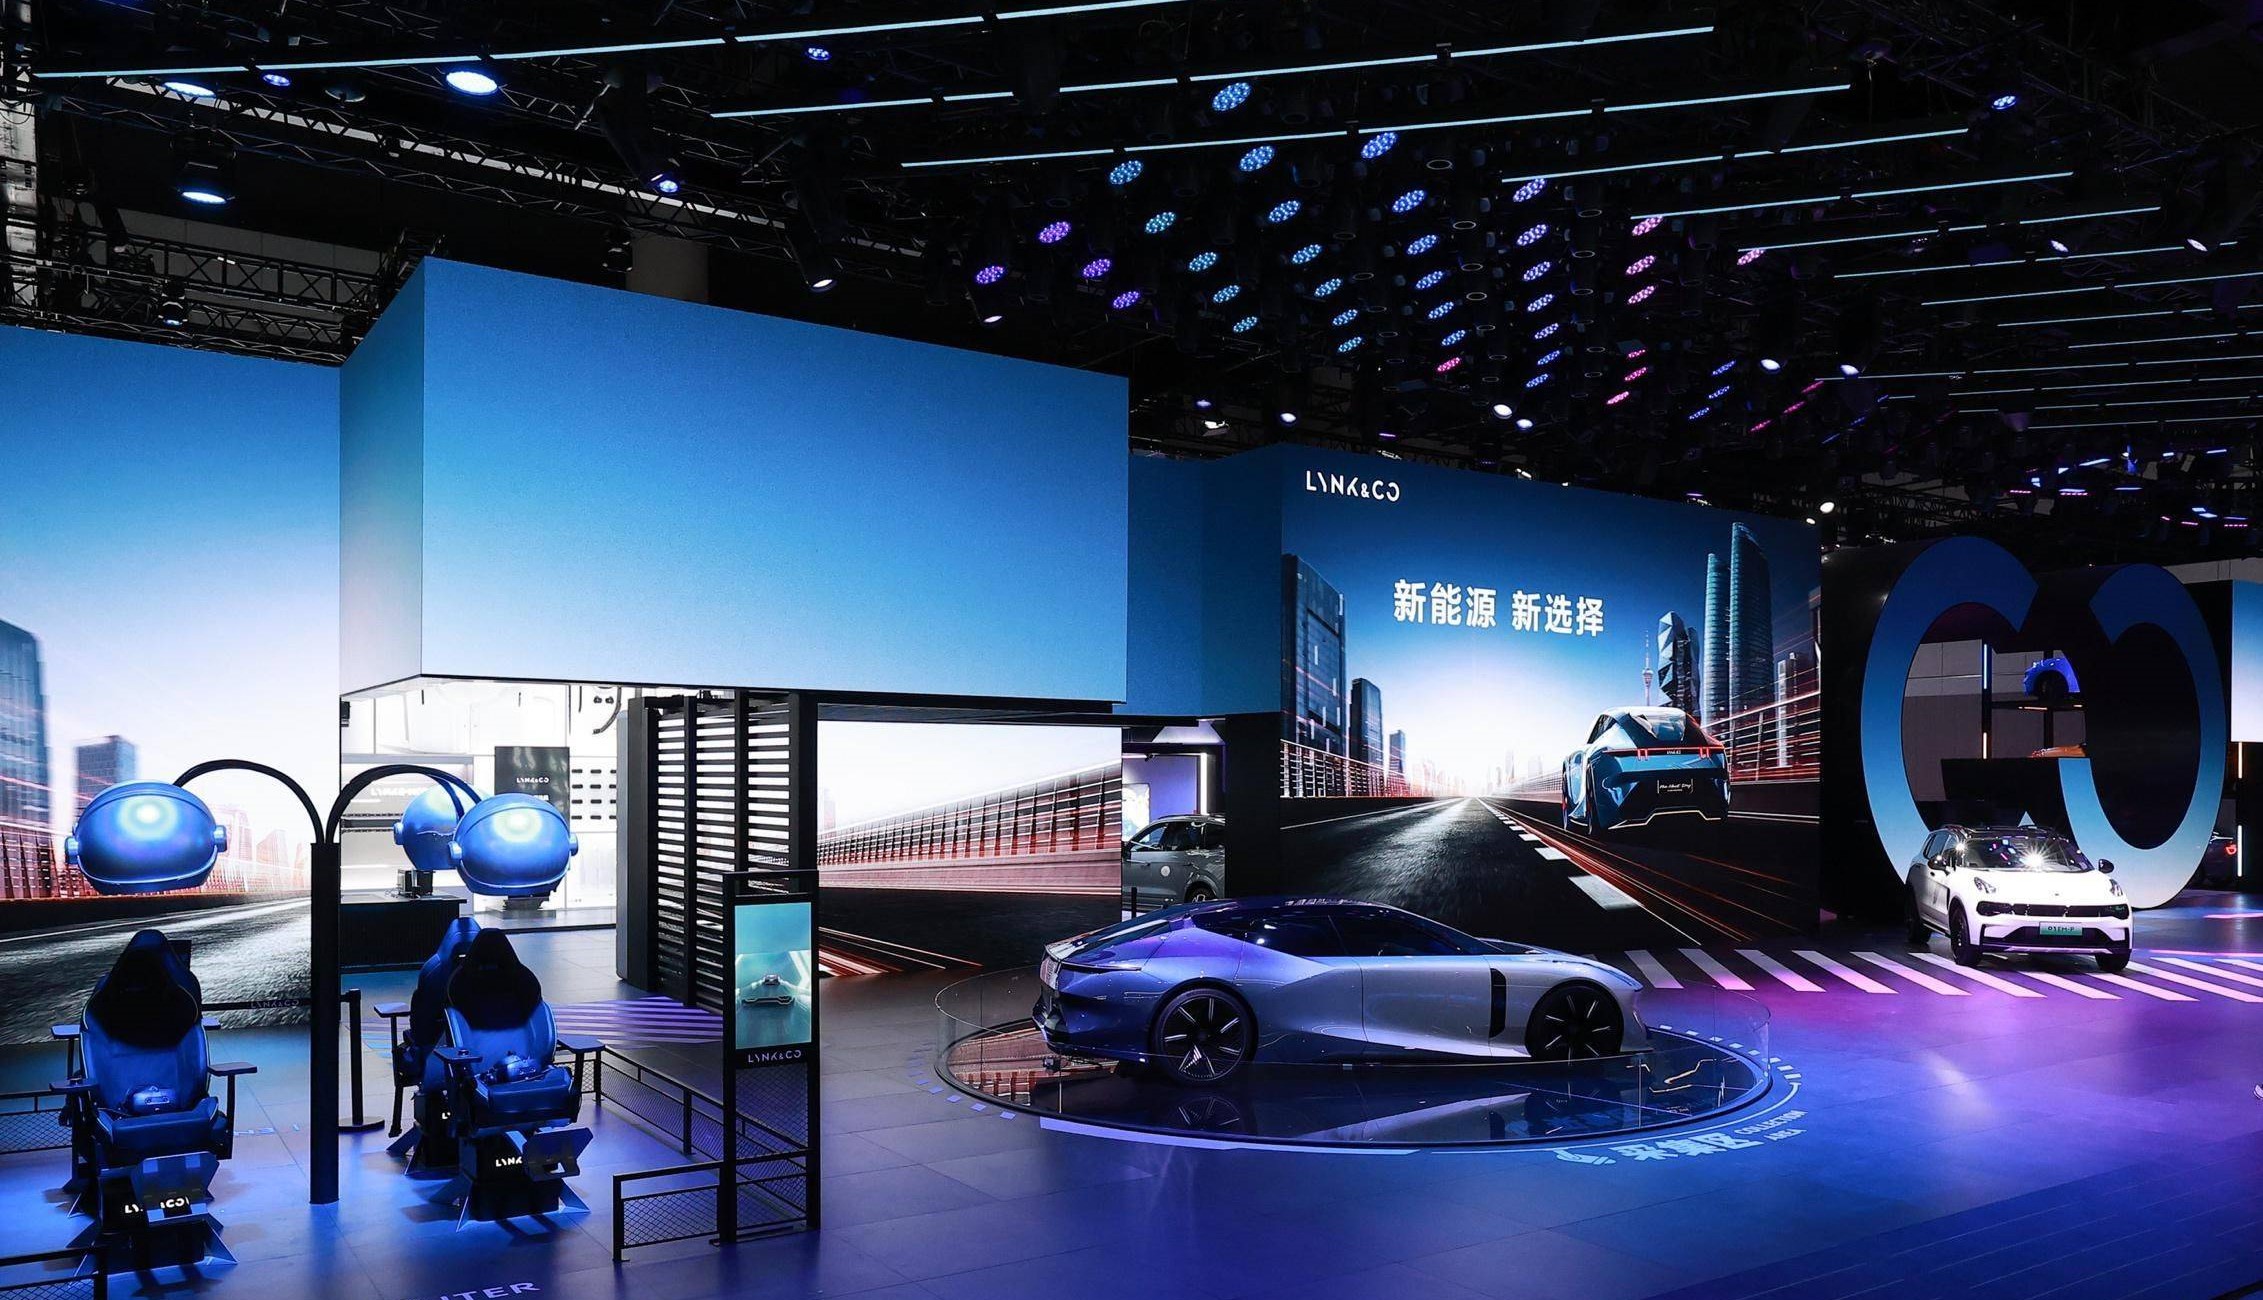 这是一张车展的照片，展示了几辆现代汽车，有着炫酷的灯光和高科技展台设计，氛围未来感十足。